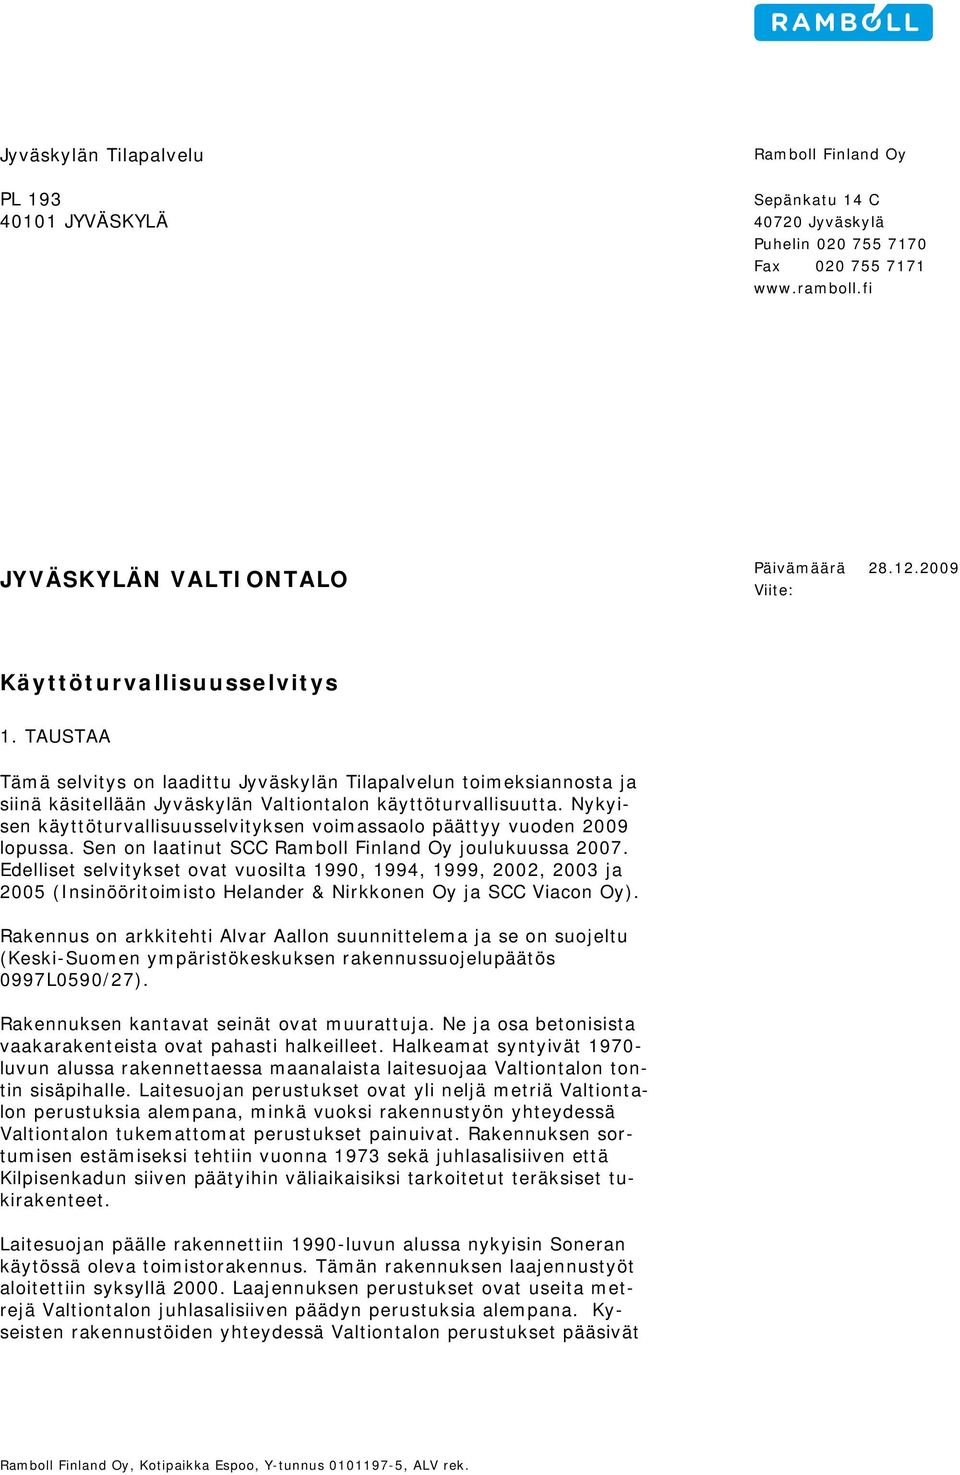 Nykyisen käyttöturvallisuusselvityksen voimassaolo päättyy vuoden 2009 lopussa. Sen on laatinut SCC Ramboll Finland Oy joulukuussa 2007.